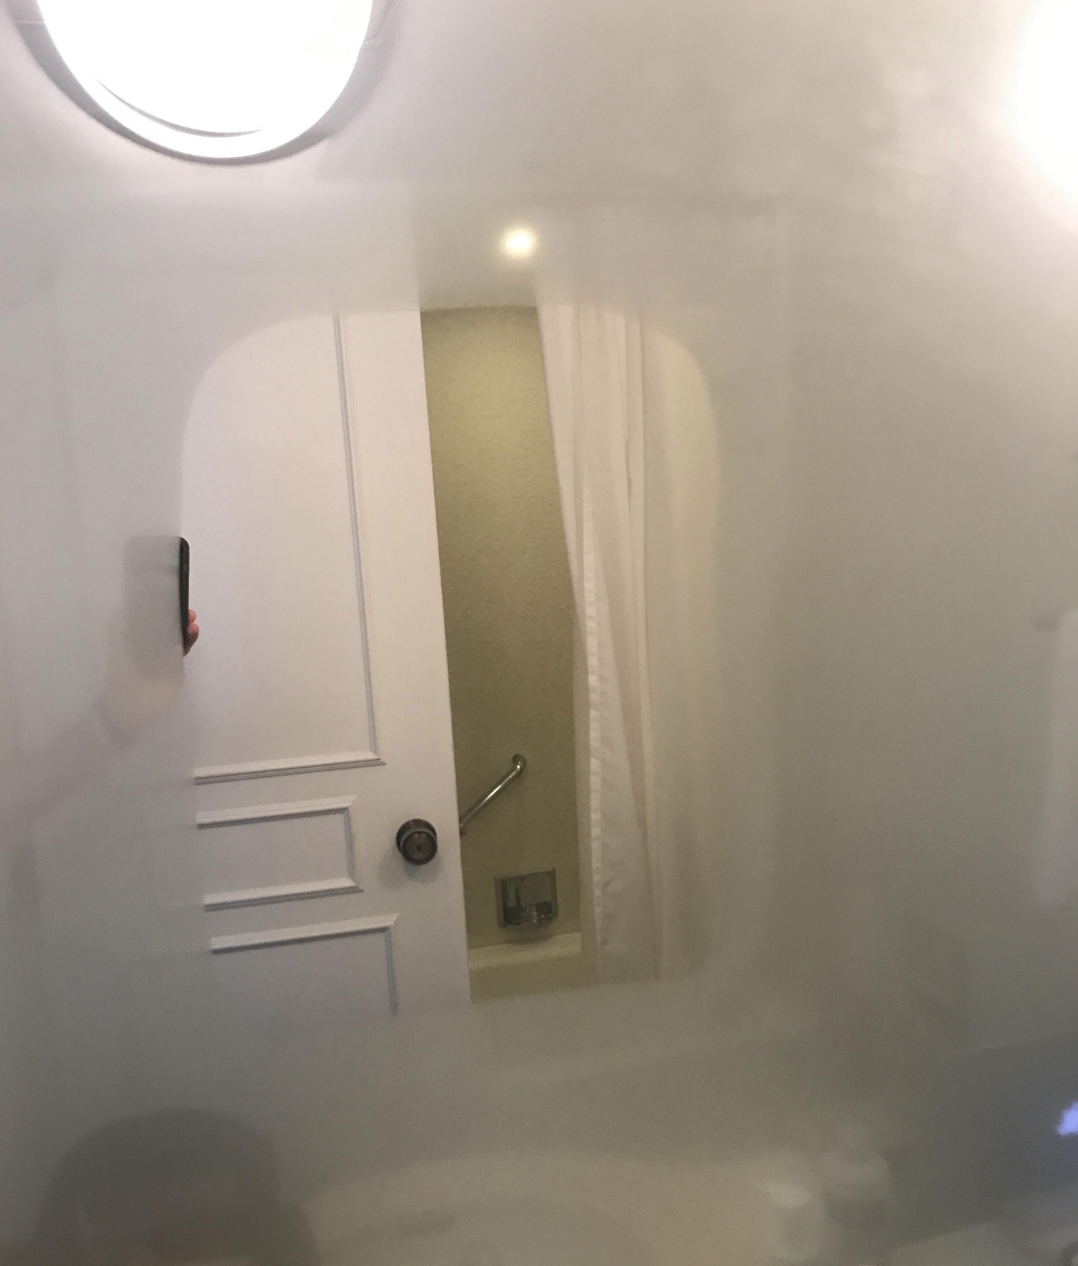 A bathroom with a heated mirror